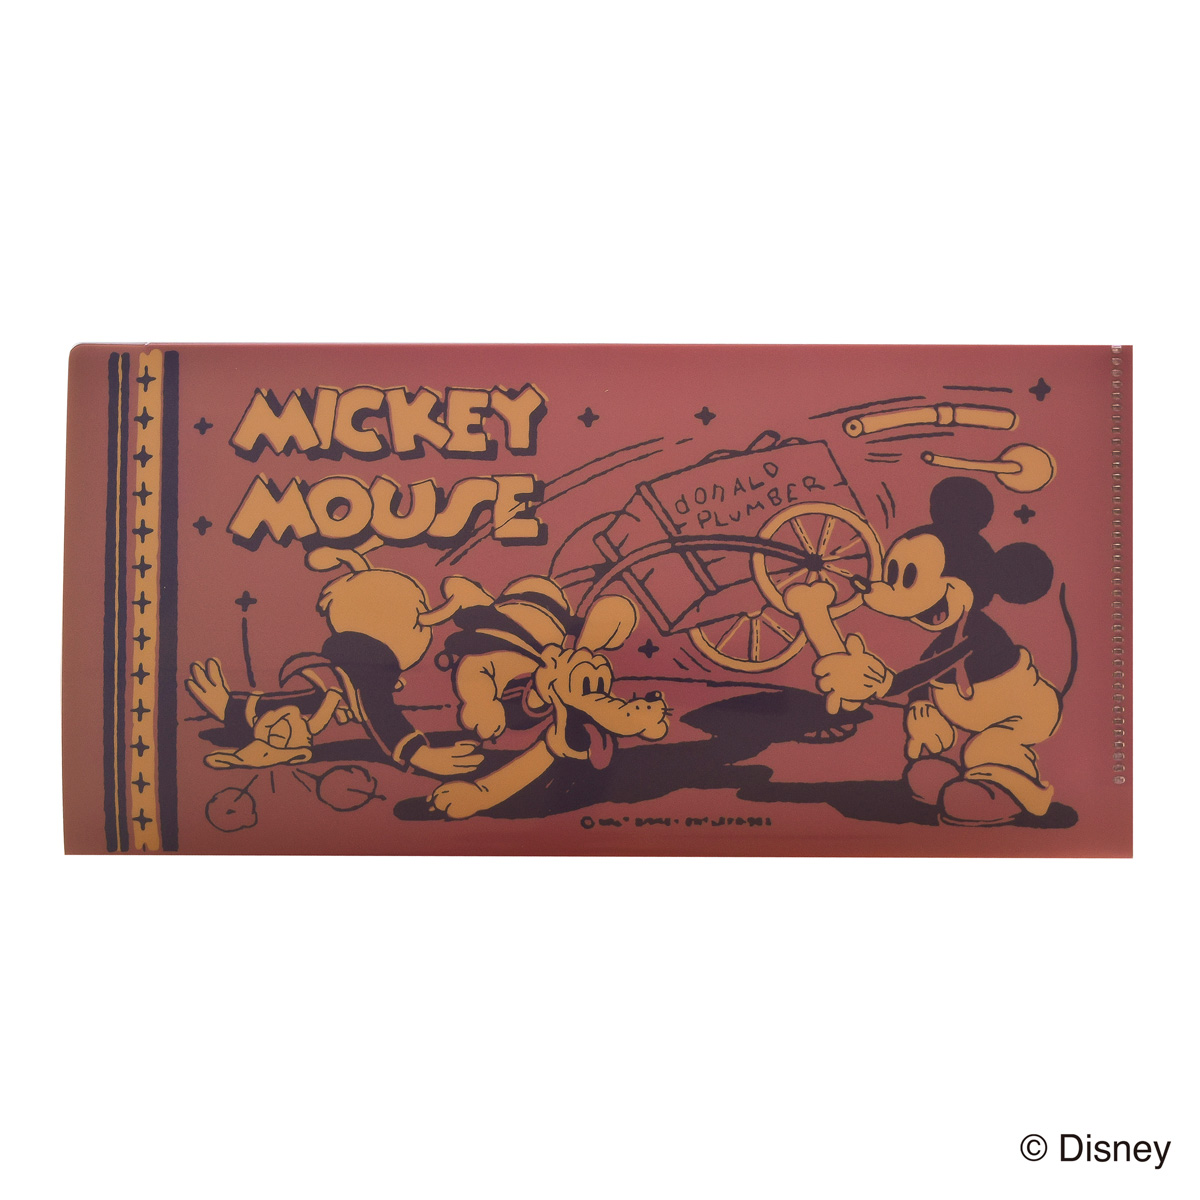 ミッキーマウス生誕90周年商品 チケットサイズファイル ミッキー N1619 23年版手帳 手帳 ダイアリー のダイゴーオンラインショップ